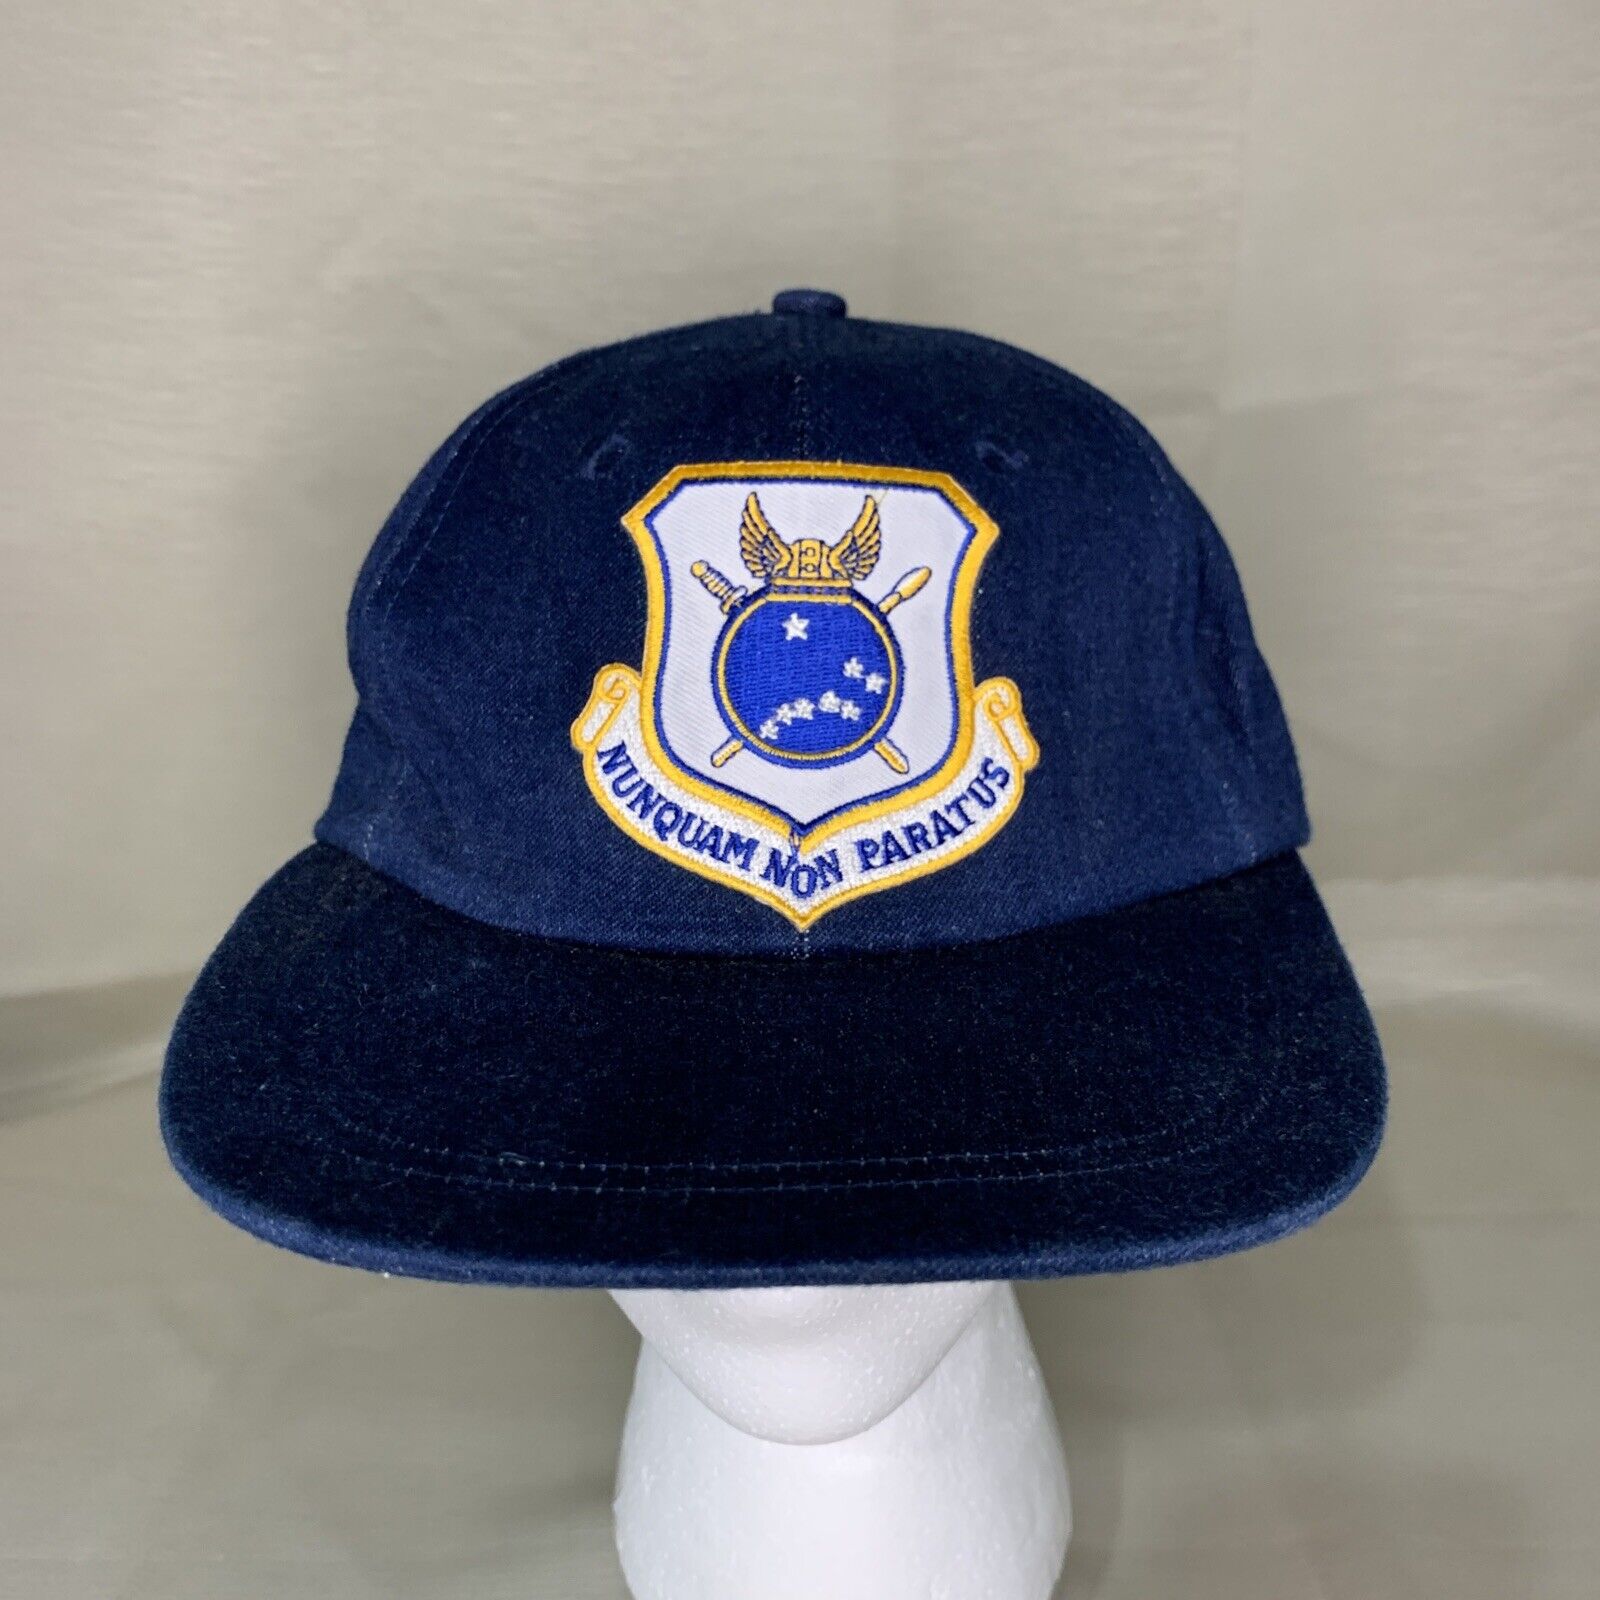 US Air Force 440th Airlift Wing Hat Cap Nunquam Non Paratus Blue Adjustable